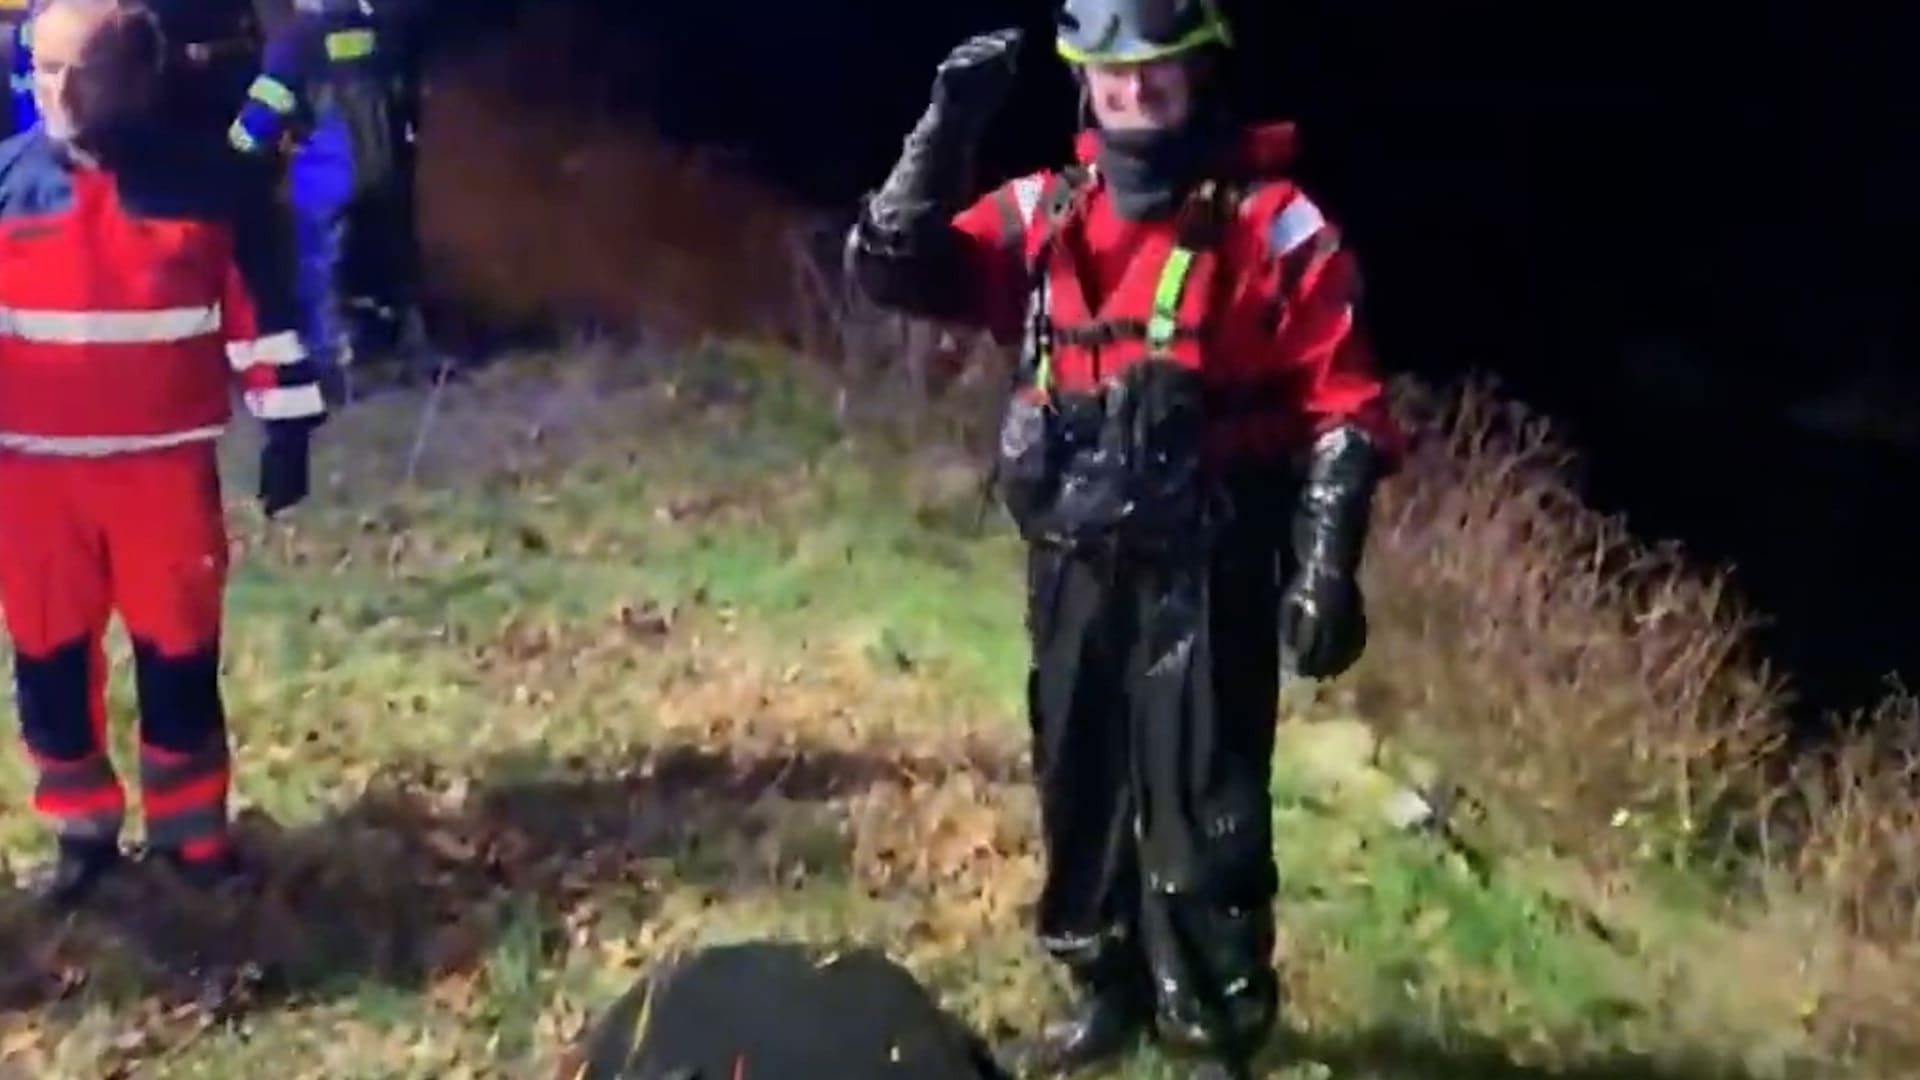 Hasiče muže, který zapadl do bahna vypuštěného rybníka, zachraňovali na paddleboardu.